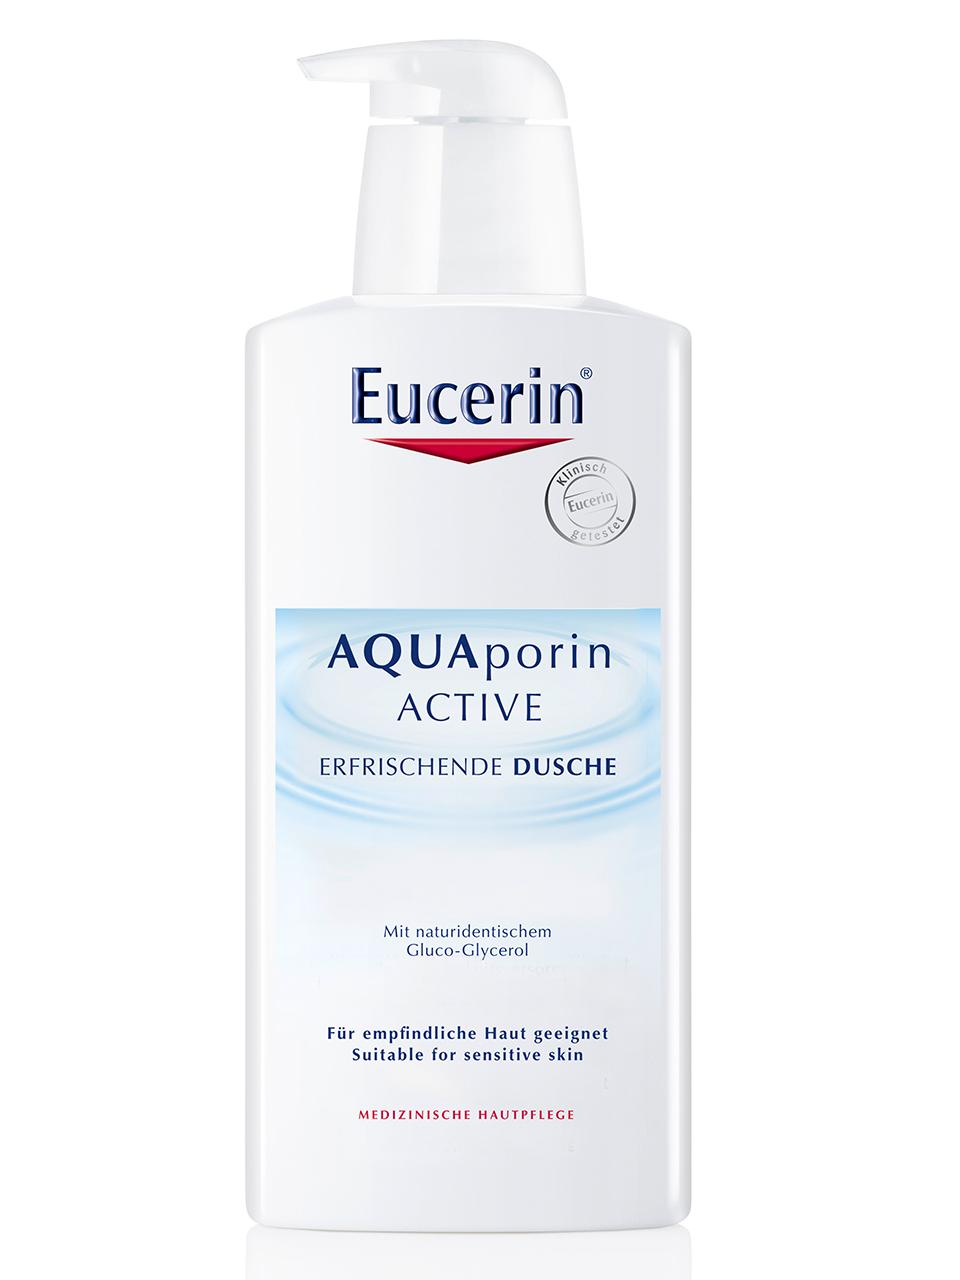 Eucerin AQUAporin ACTIVE ERFRISCHENDE DUSCHE